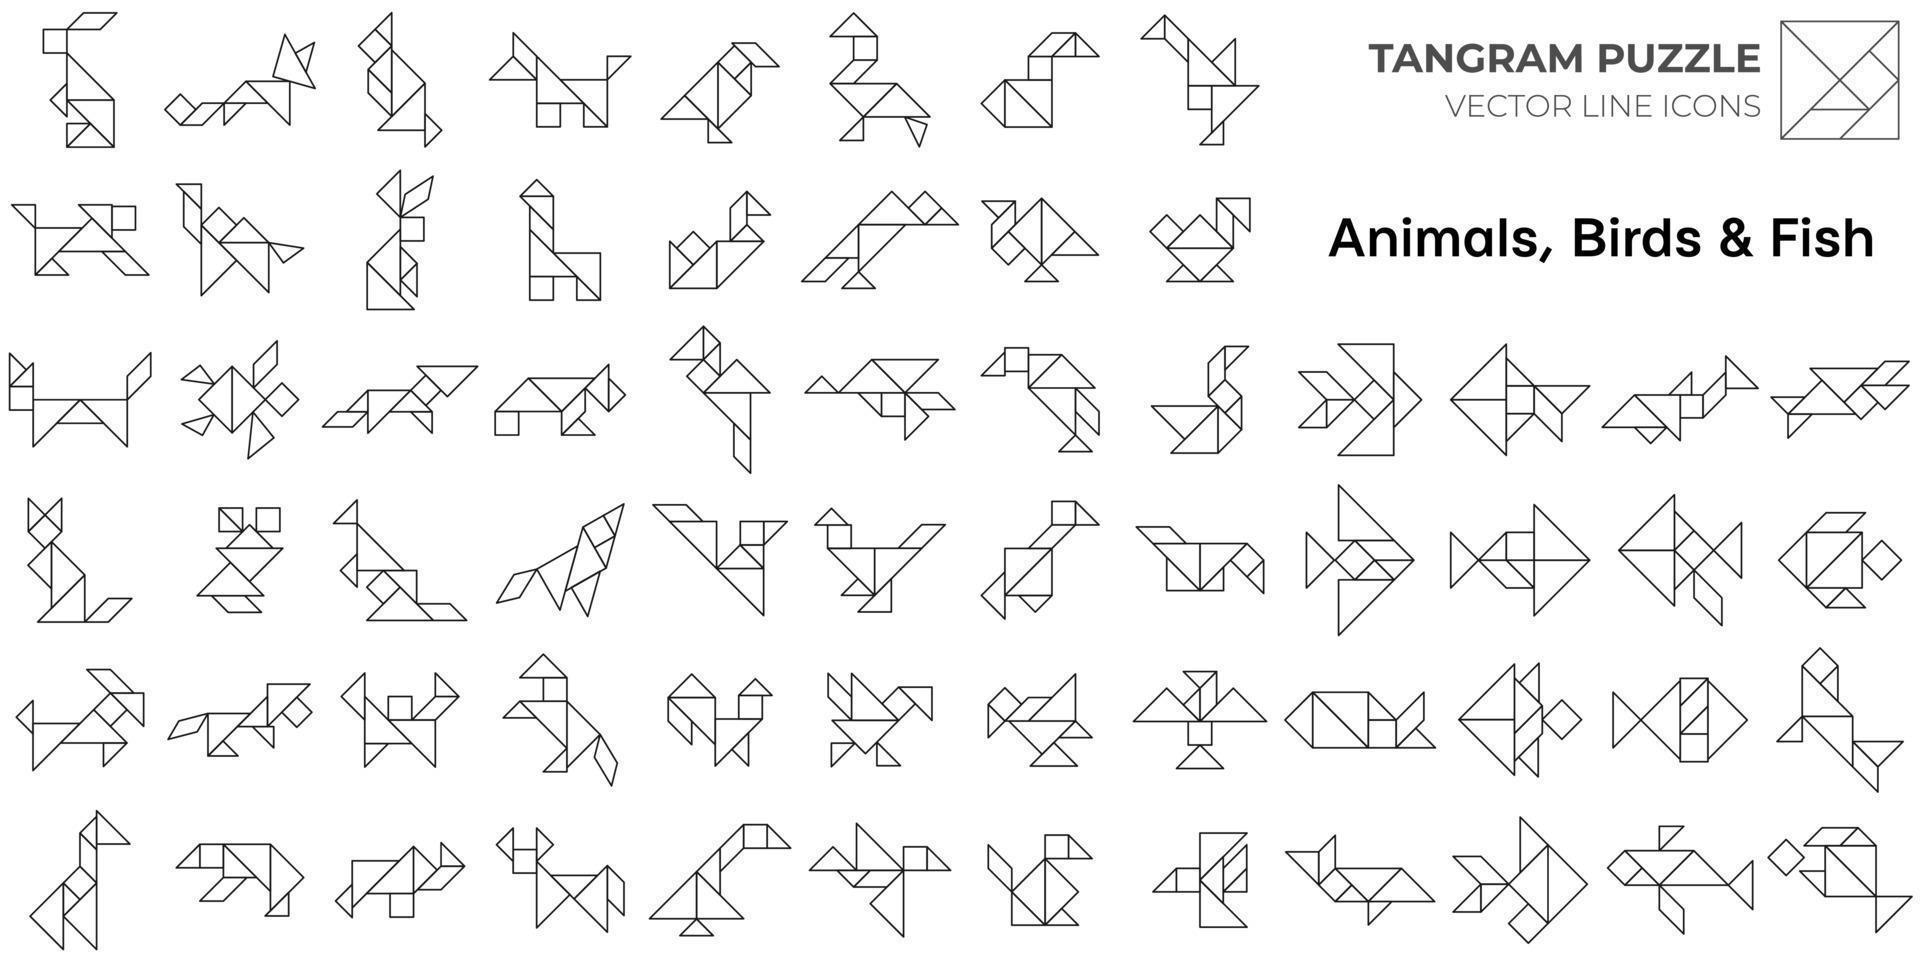 jeu de puzzle tangram. icônes de ligne tangram isolées avec des animaux, des oiseaux et des poissons. illustration vectorielle vecteur